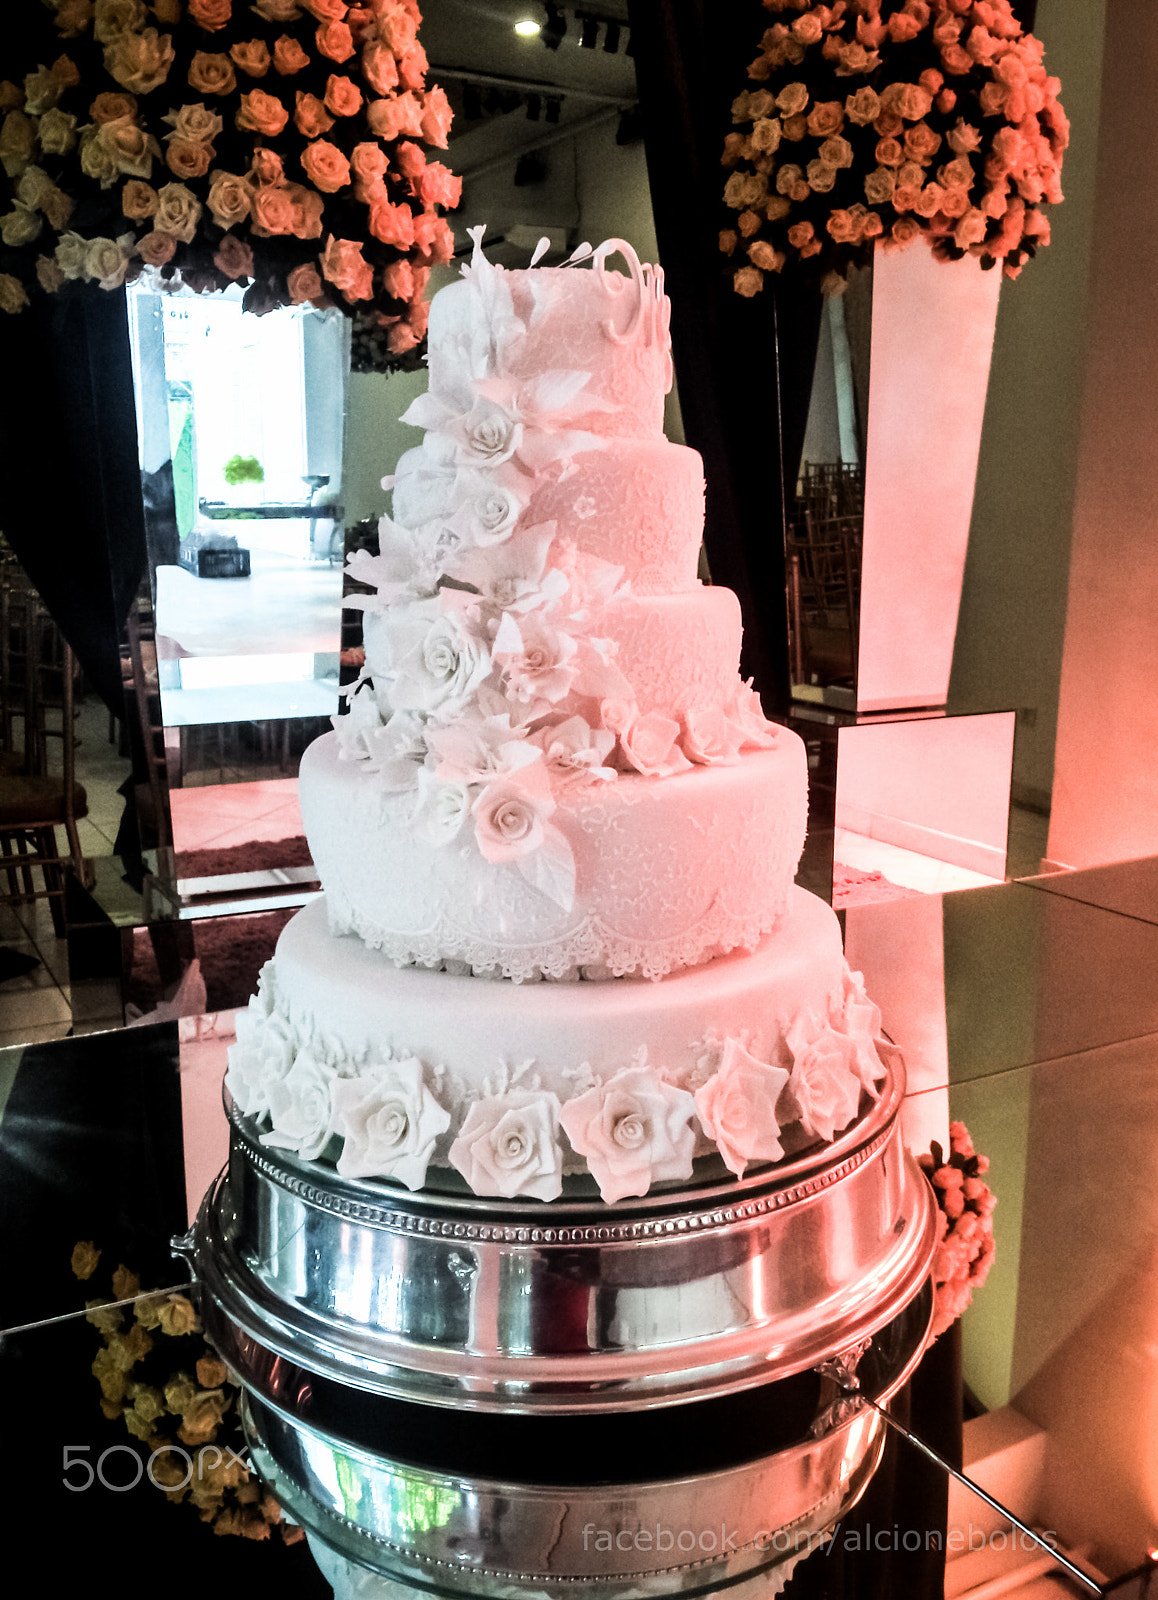 Motorola RAZR i sample photo. Wedding cake with roses photography